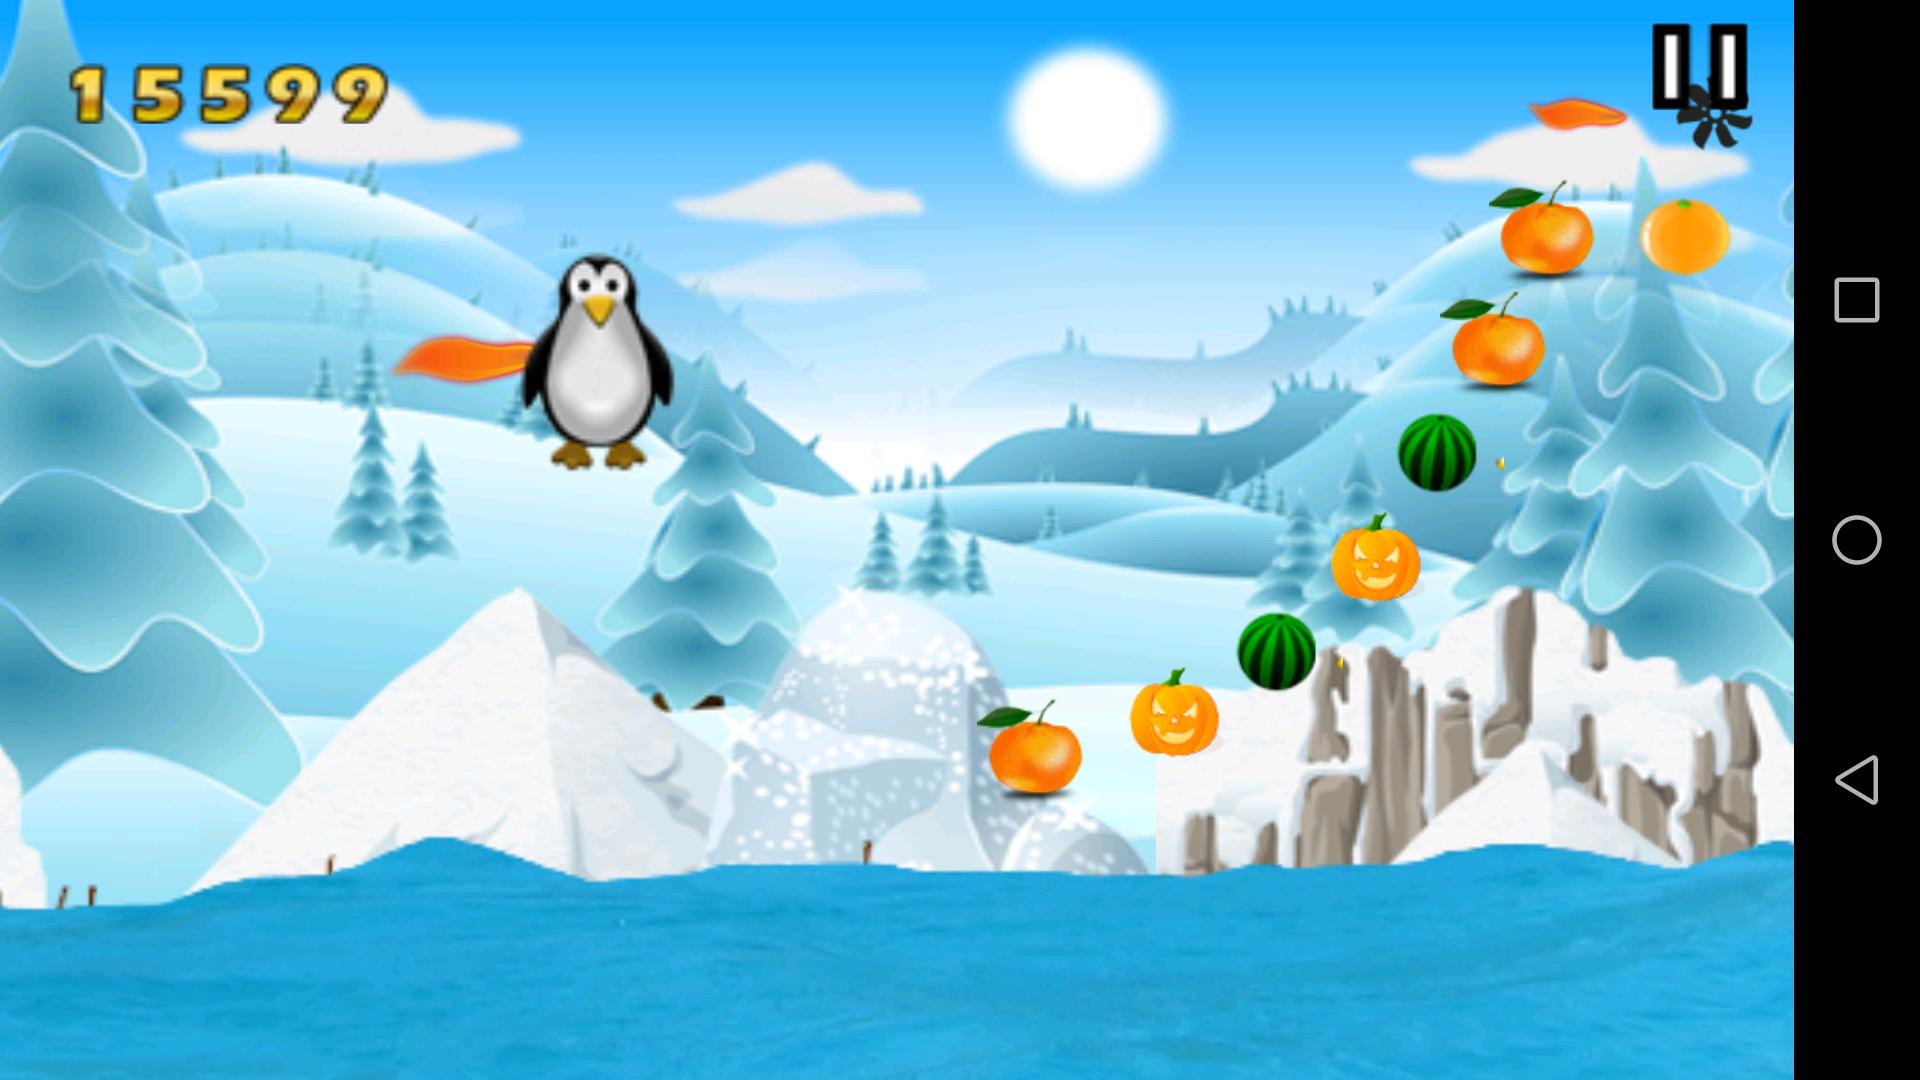 Бит пингвин игра. Пингвин игра виндовс 10. Зимний фон игры Пингвин. Программа для игры Пингвин. Игра Пингвин по льду прыгает и собирает монетки.